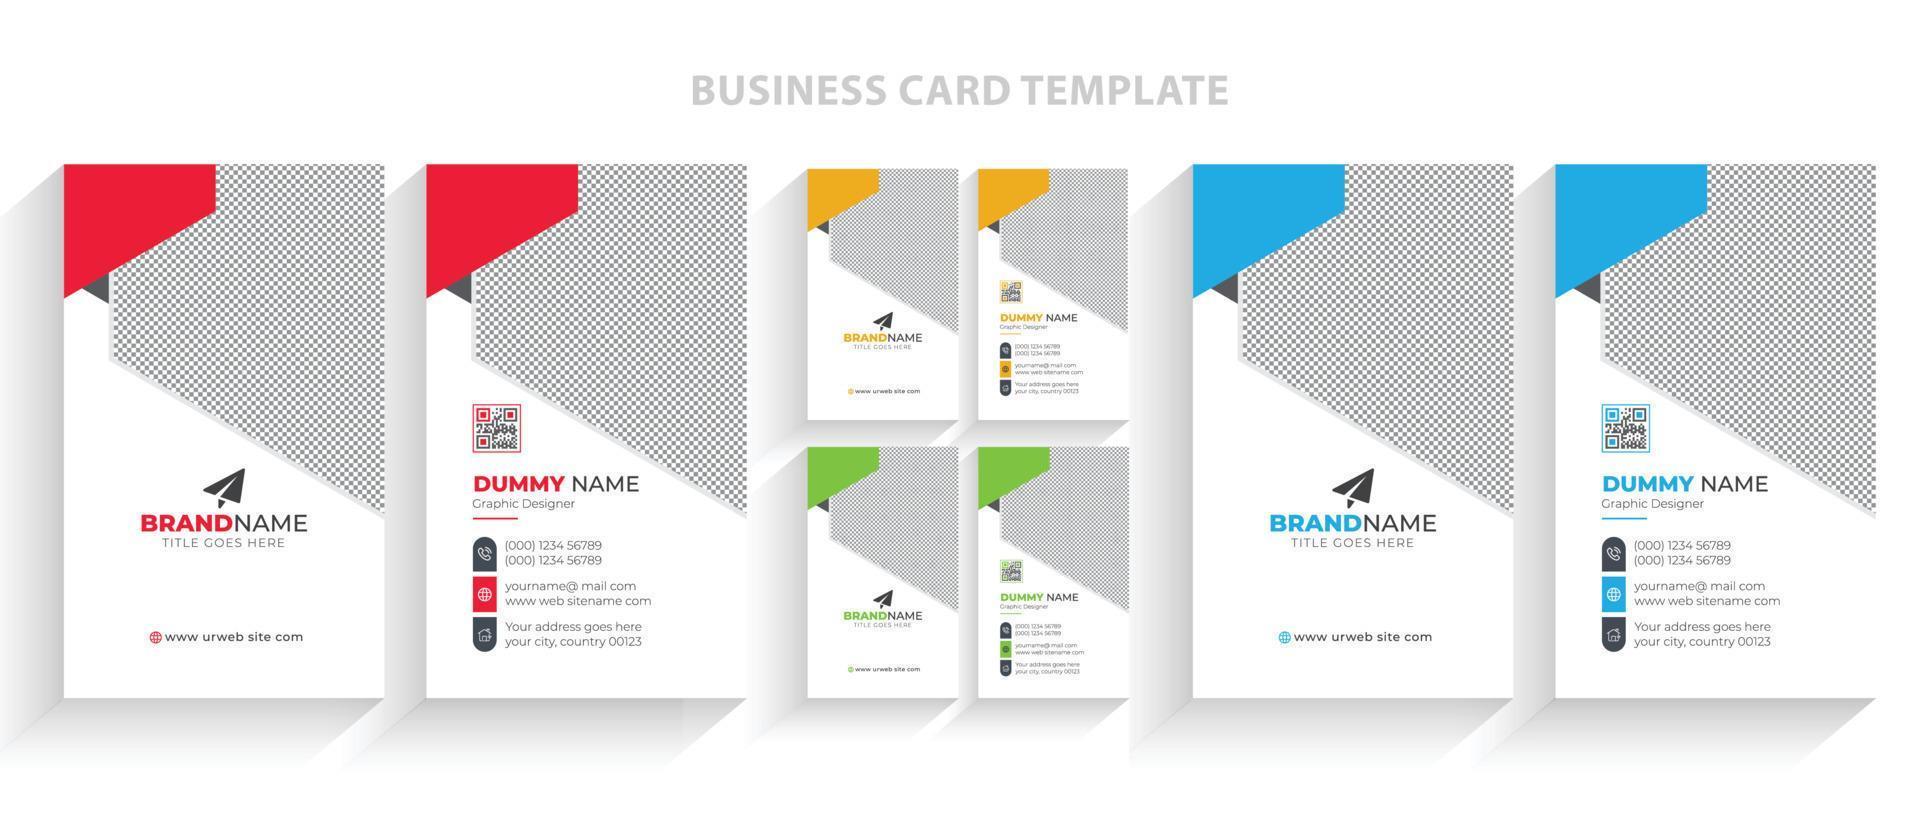 vector de plantilla de tarjeta de visita creativa moderna, diseño de tarjeta de visita minimalista simple y elegante